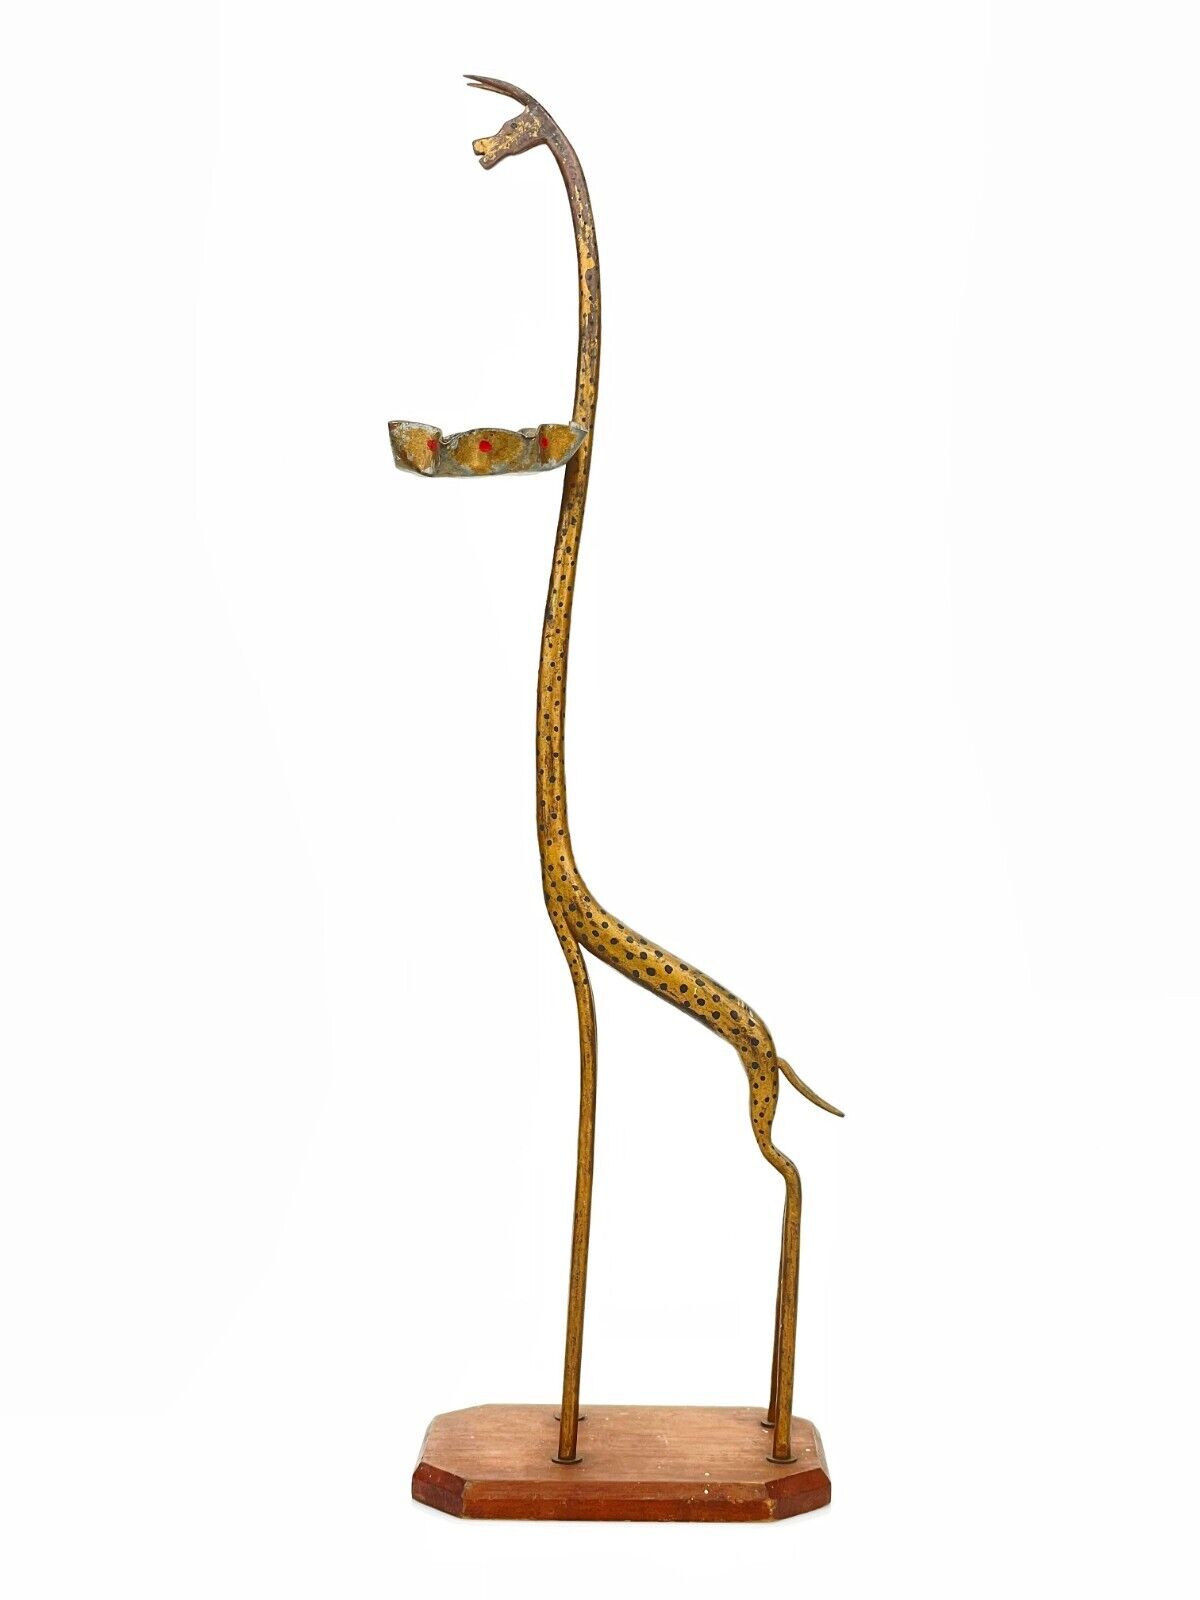 Vintage Thomas Molesworth Wrought Iron Giraffe Sculptural Ashtray Smoking Stand